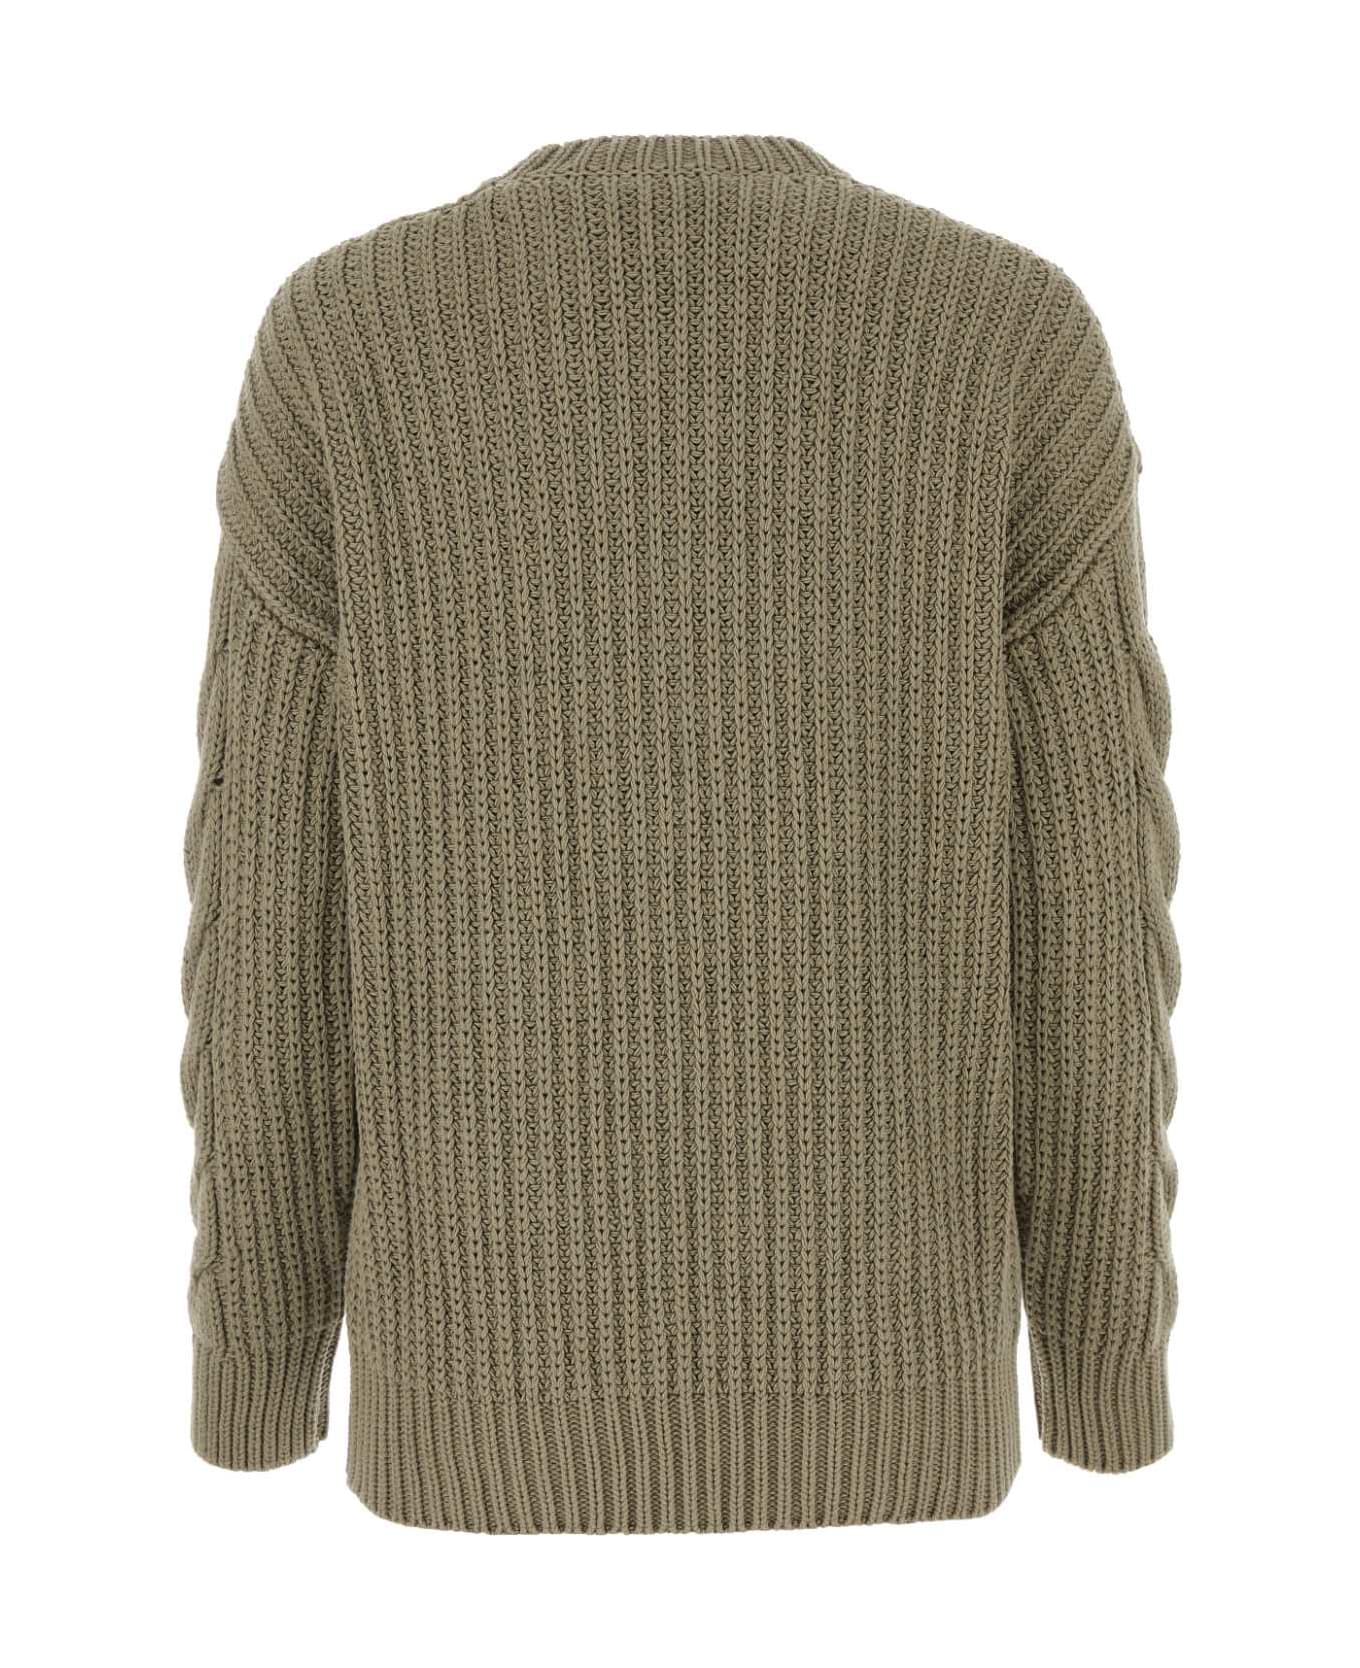 Max Mara Sage Green Cotton Acciaio Sweater - VERDEKAKI ニットウェア